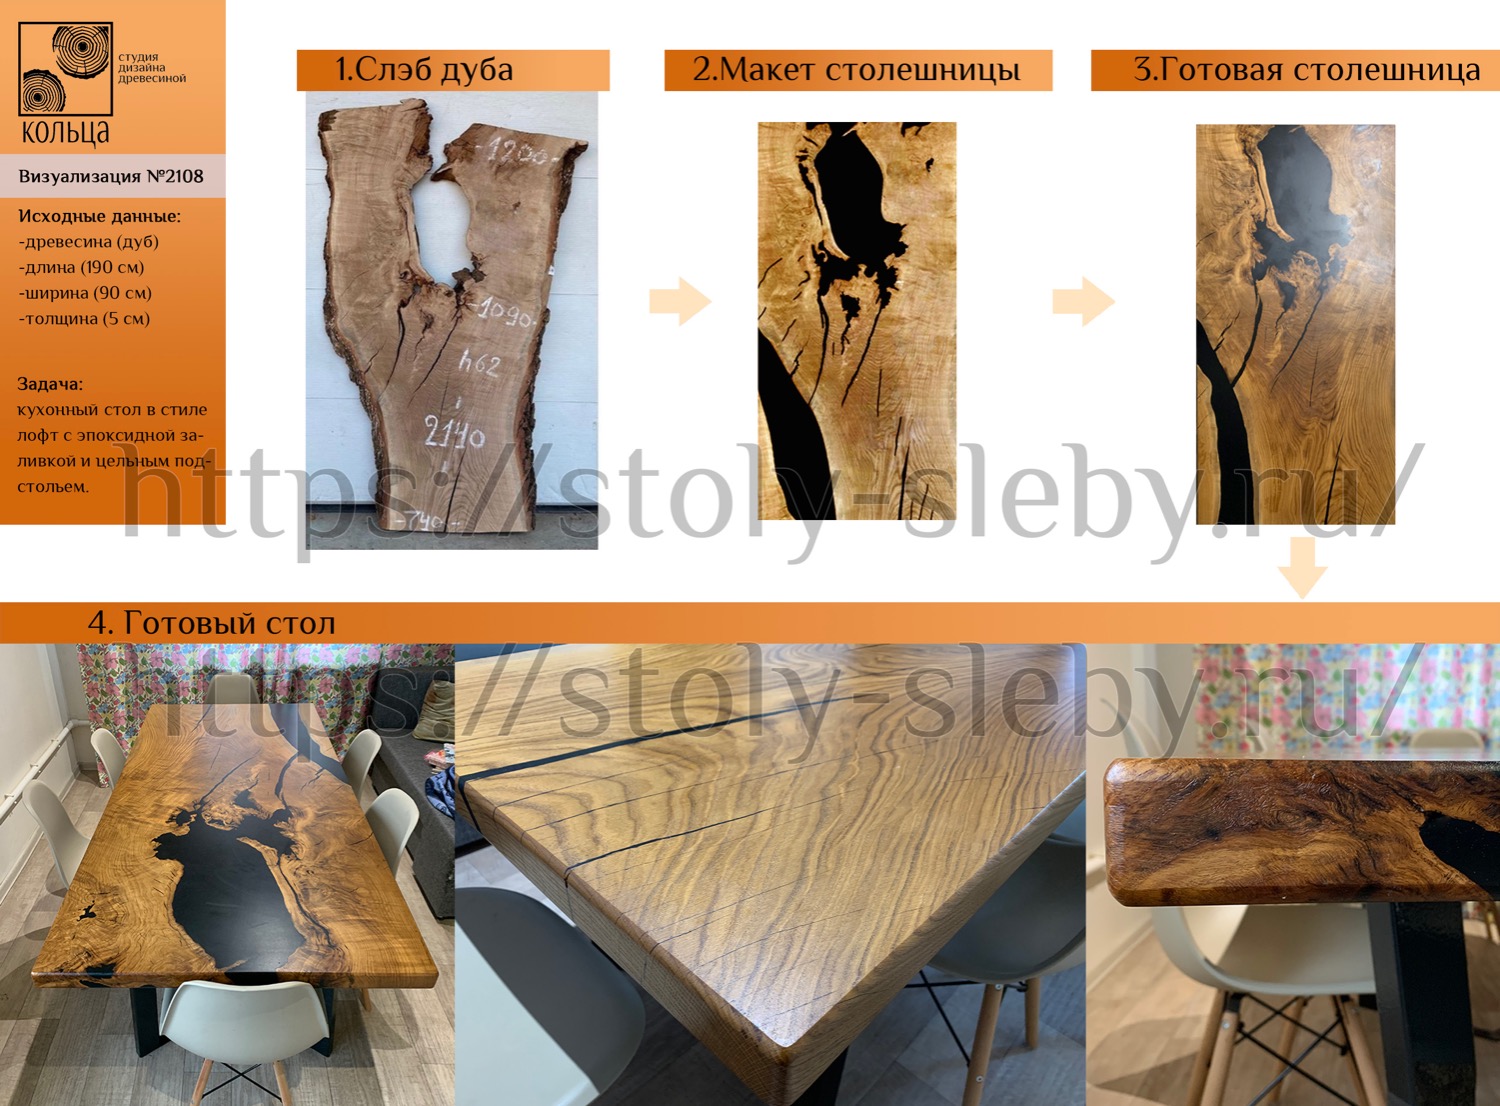 Инфографика: этапы разработки кухонного стола в стиле лофт из слэба дуба - от студии Кольца